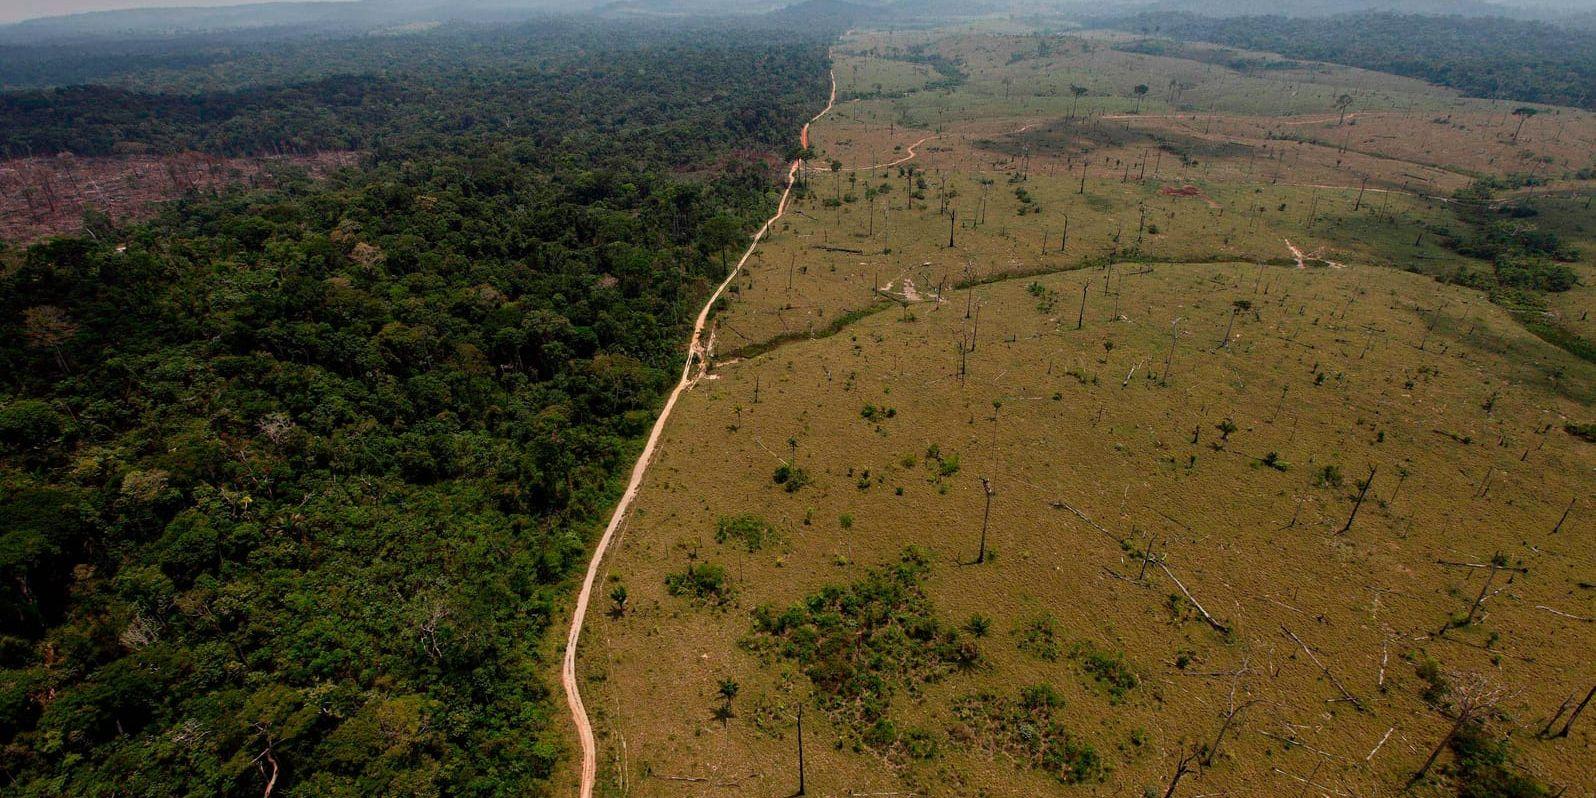 Skövlat område i närheten av området Novo Progresso i delstaten Pará i norra Brasilien, där nationalparken Jamanxim, som nu kan komma att krympas, är belägen. Arkivbild.